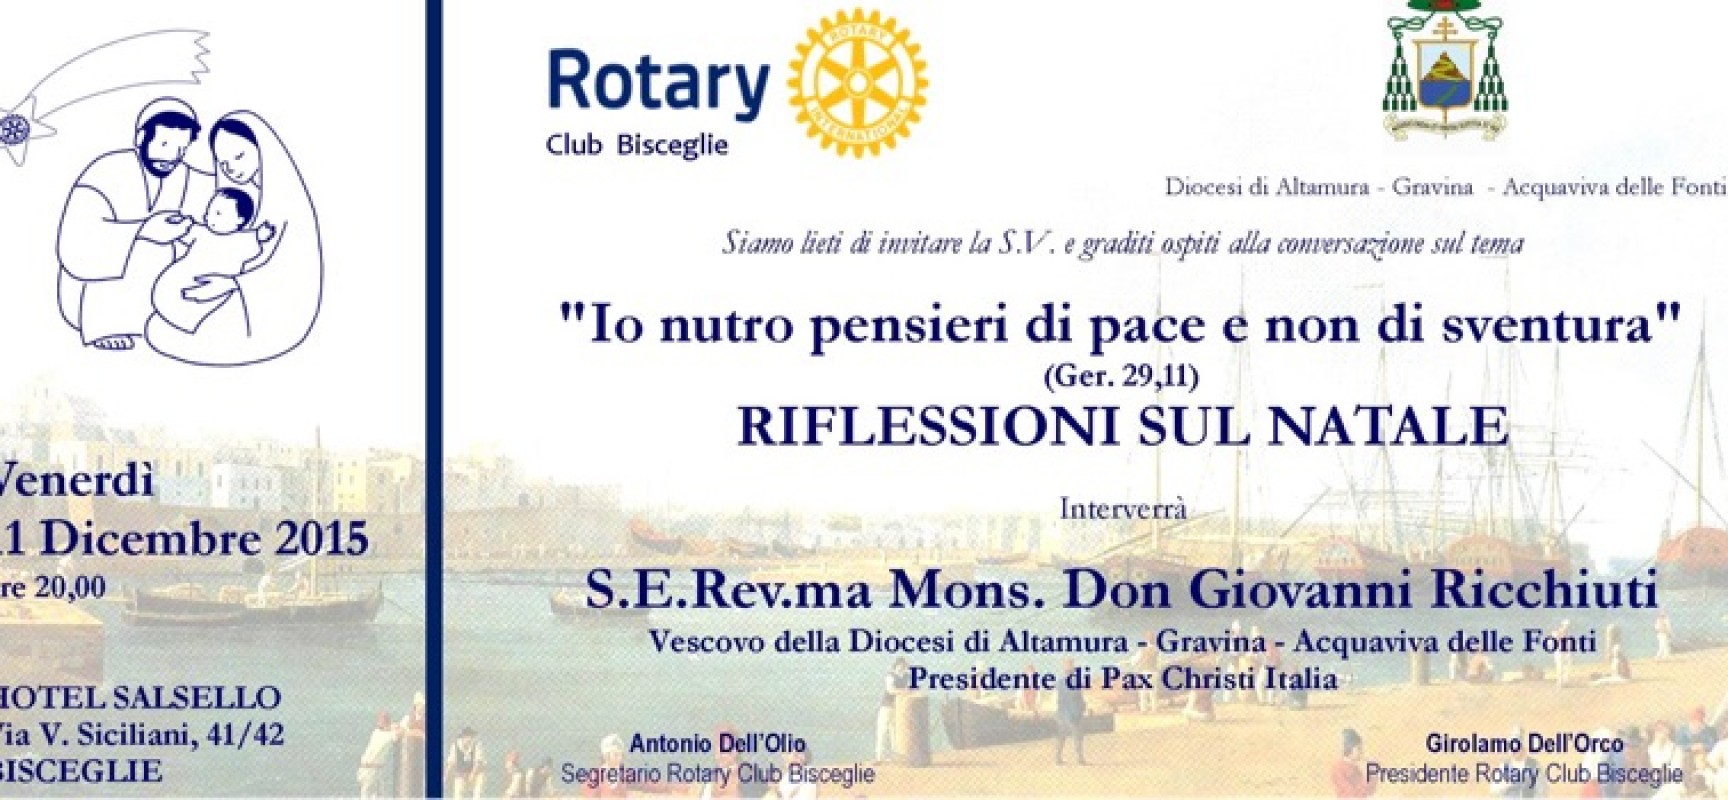 Rotary Club, questa sera incontro sul Natale con mons. Giovanni Ricchiuti